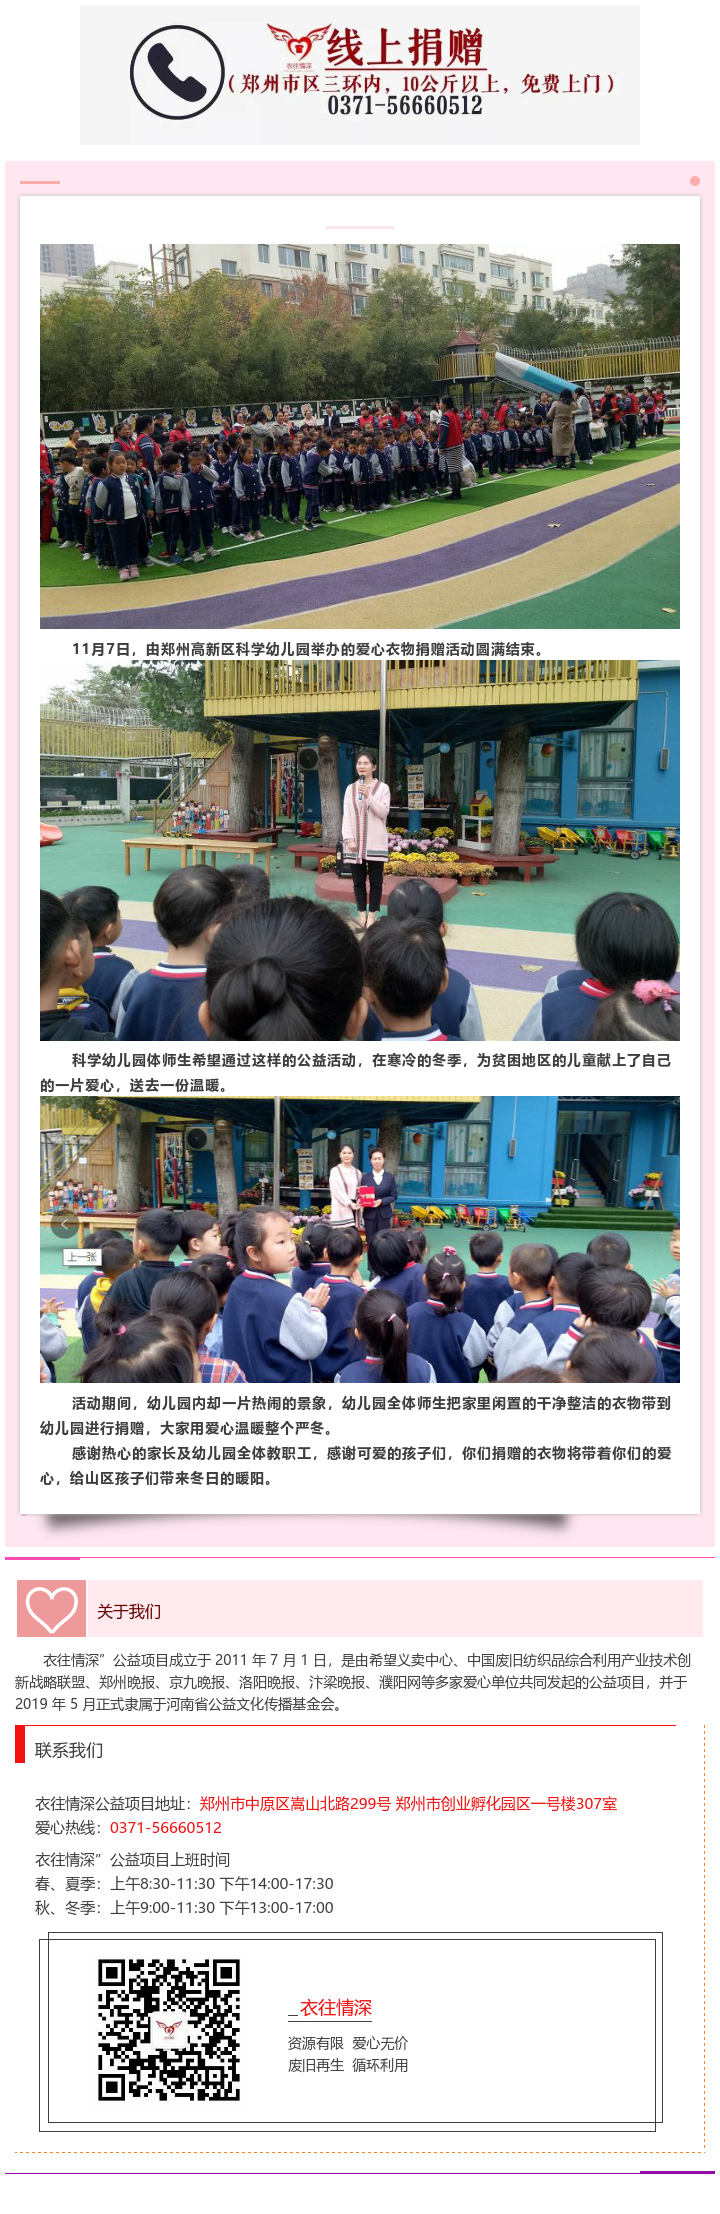 郑州高新区科学幼儿园爱心衣物捐赠活动圆满完成.png